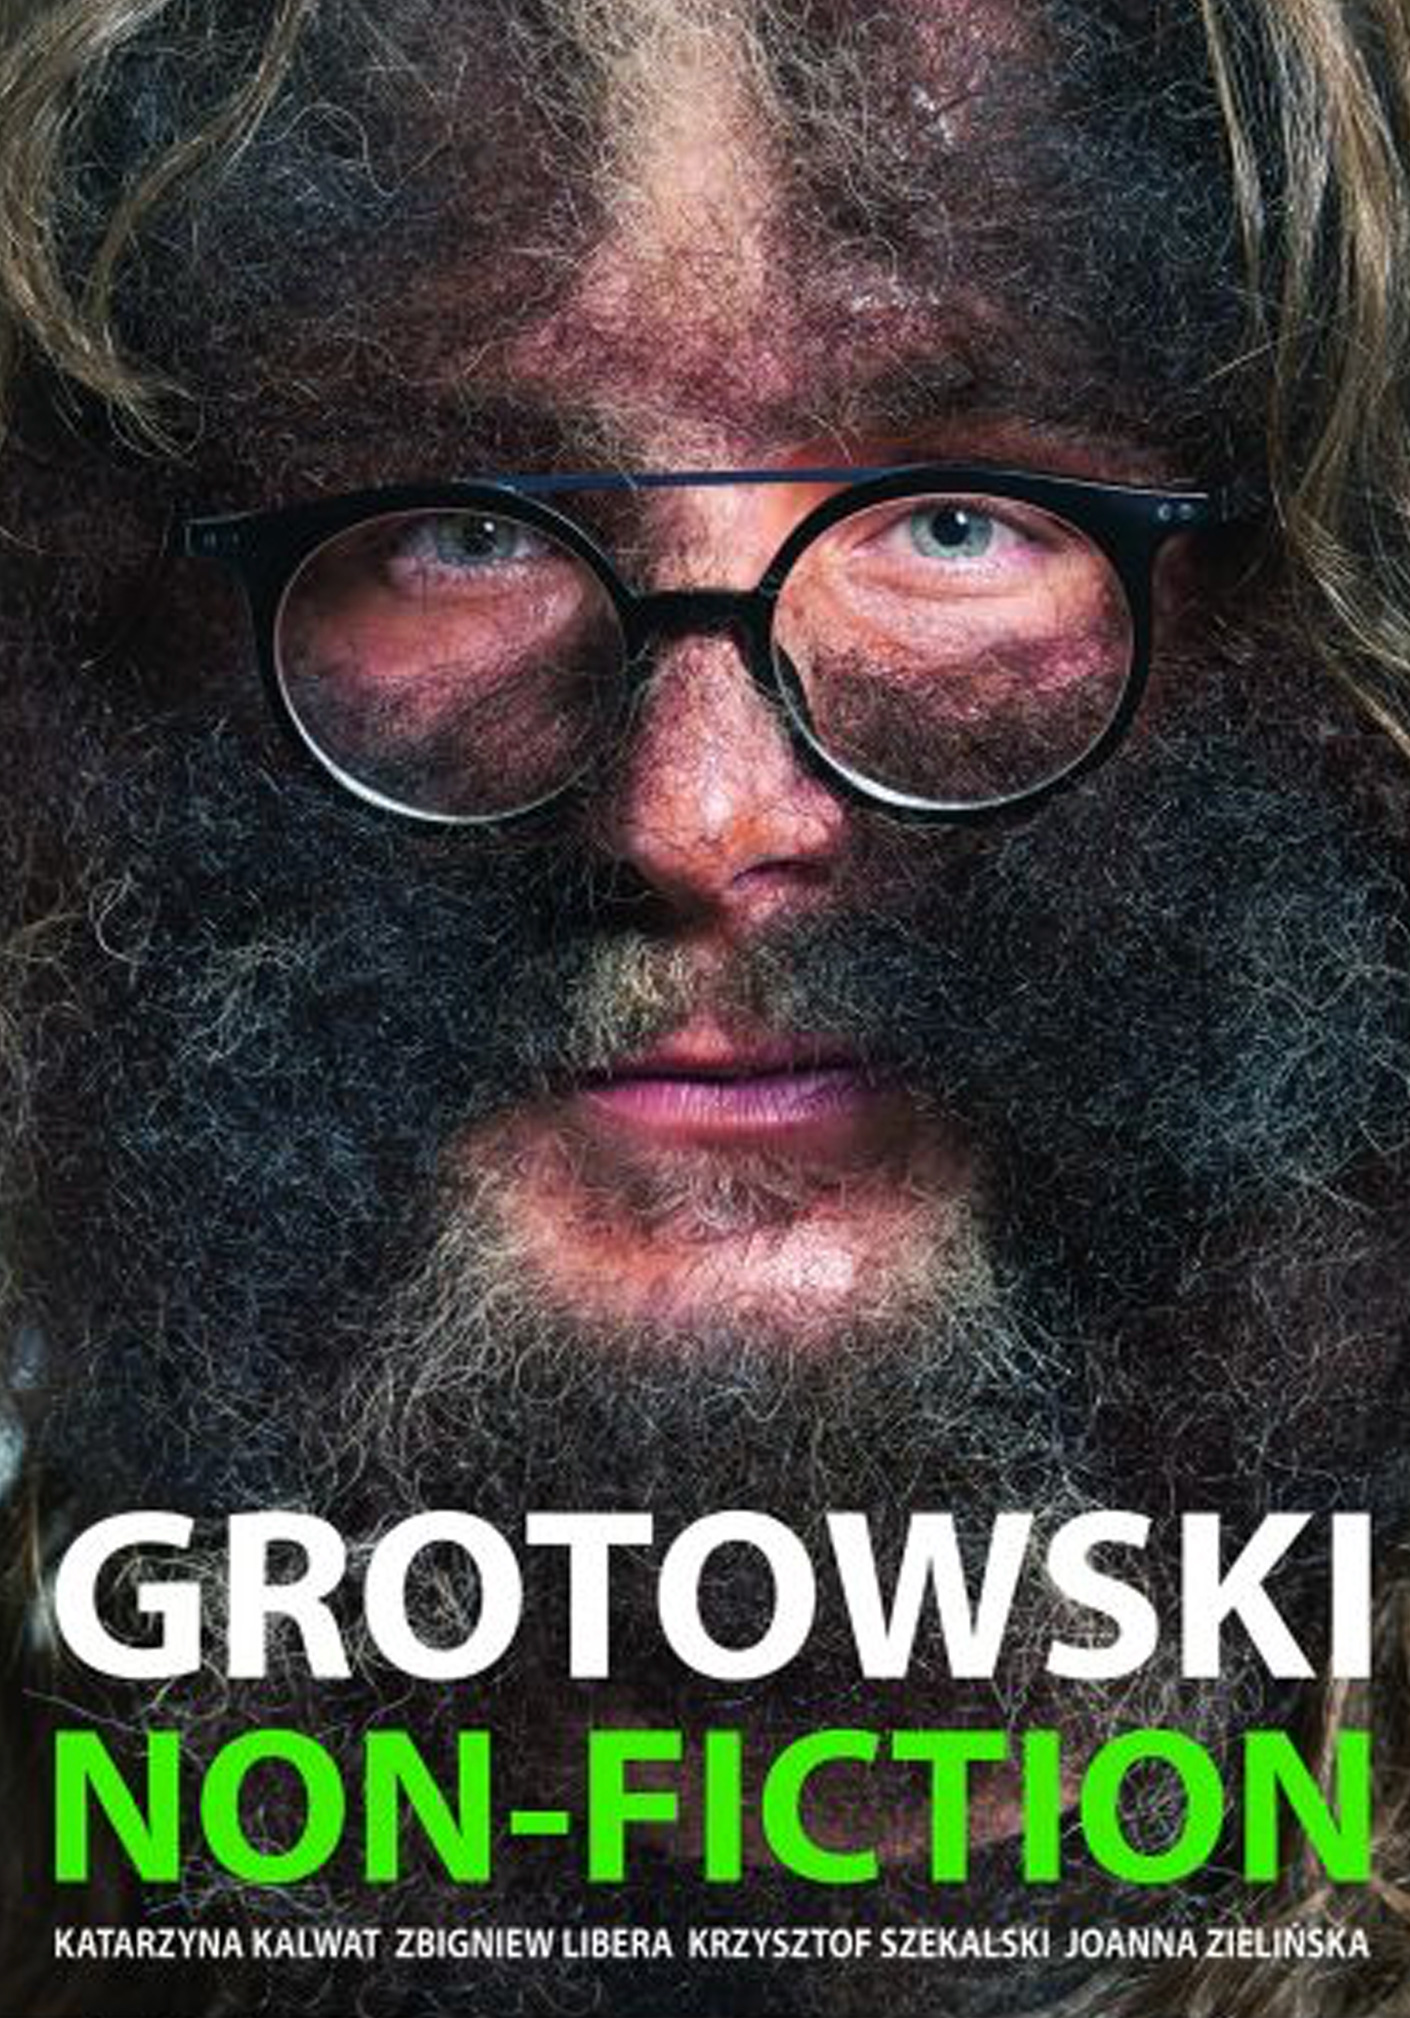 GROTOWSKI NON-FICTION